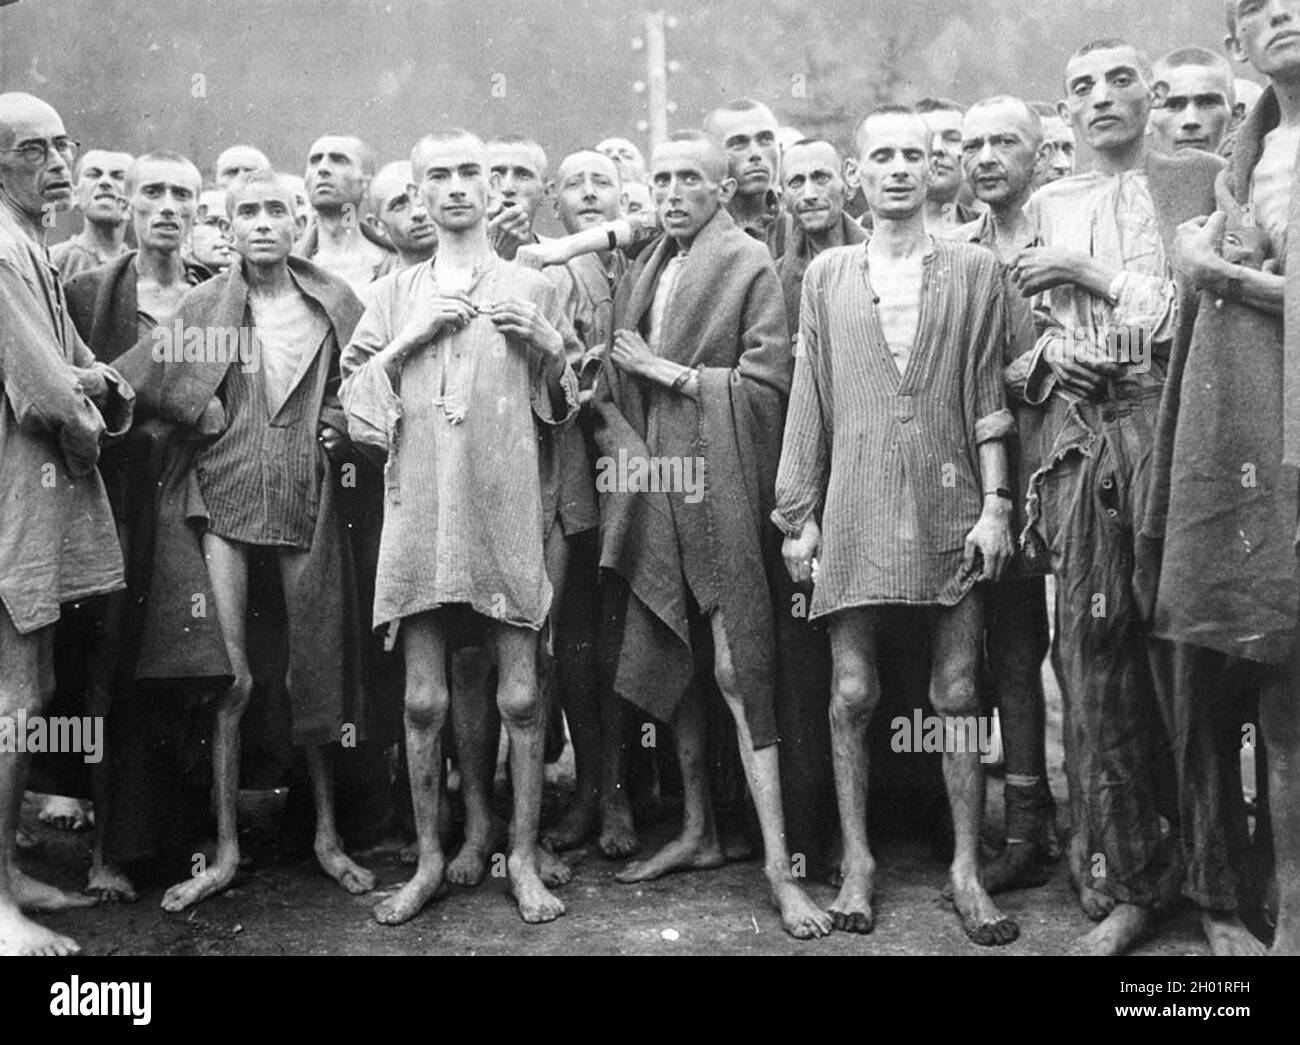 Am 7. Mai 1945 posieren hungernde Gefangene in einem Konzentrationslager in Ebensee, Österreich. Stockfoto